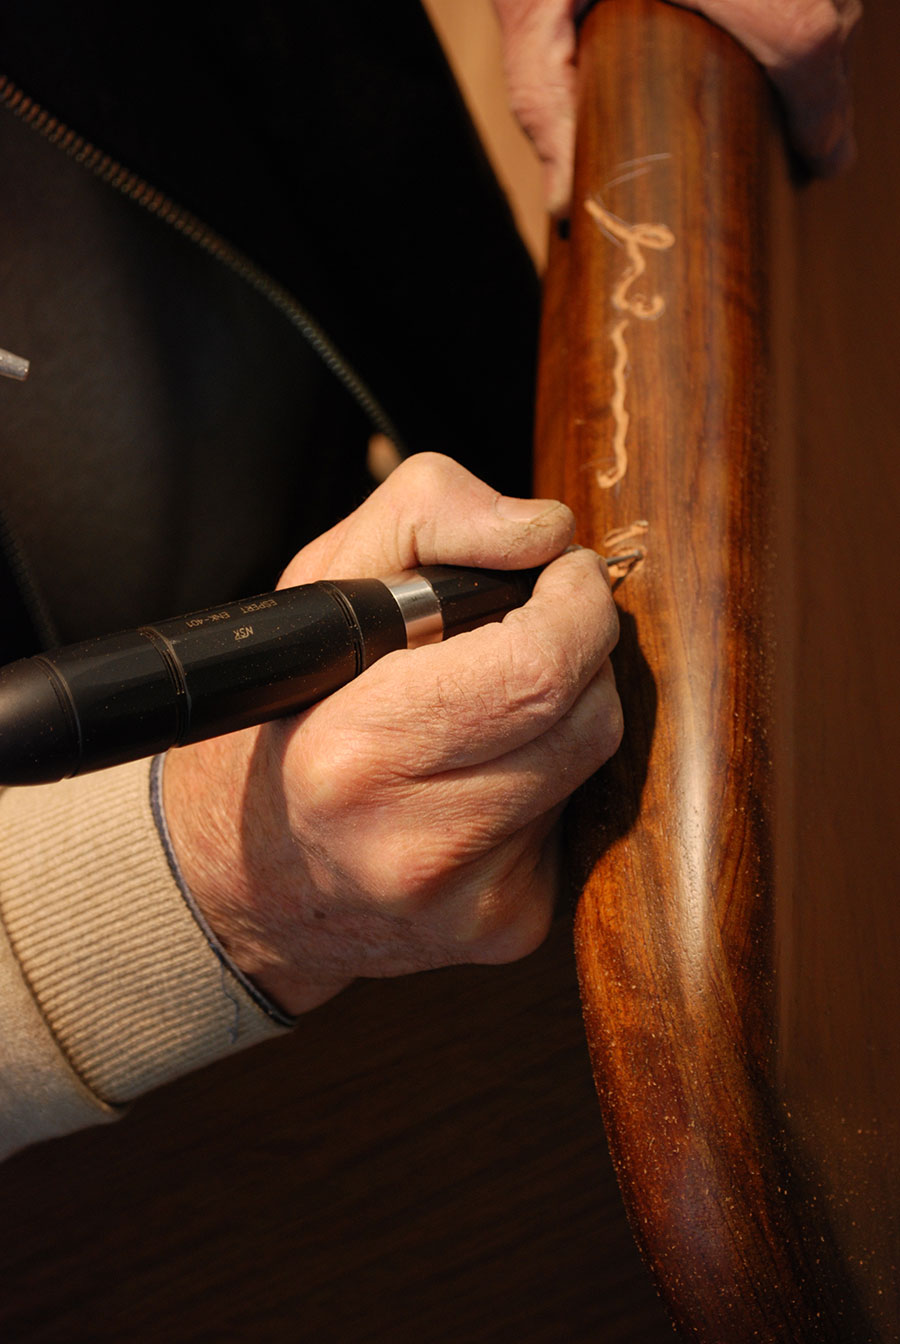 Minas hand engraving a table top. 
Photo by Alexandros Botonakis.